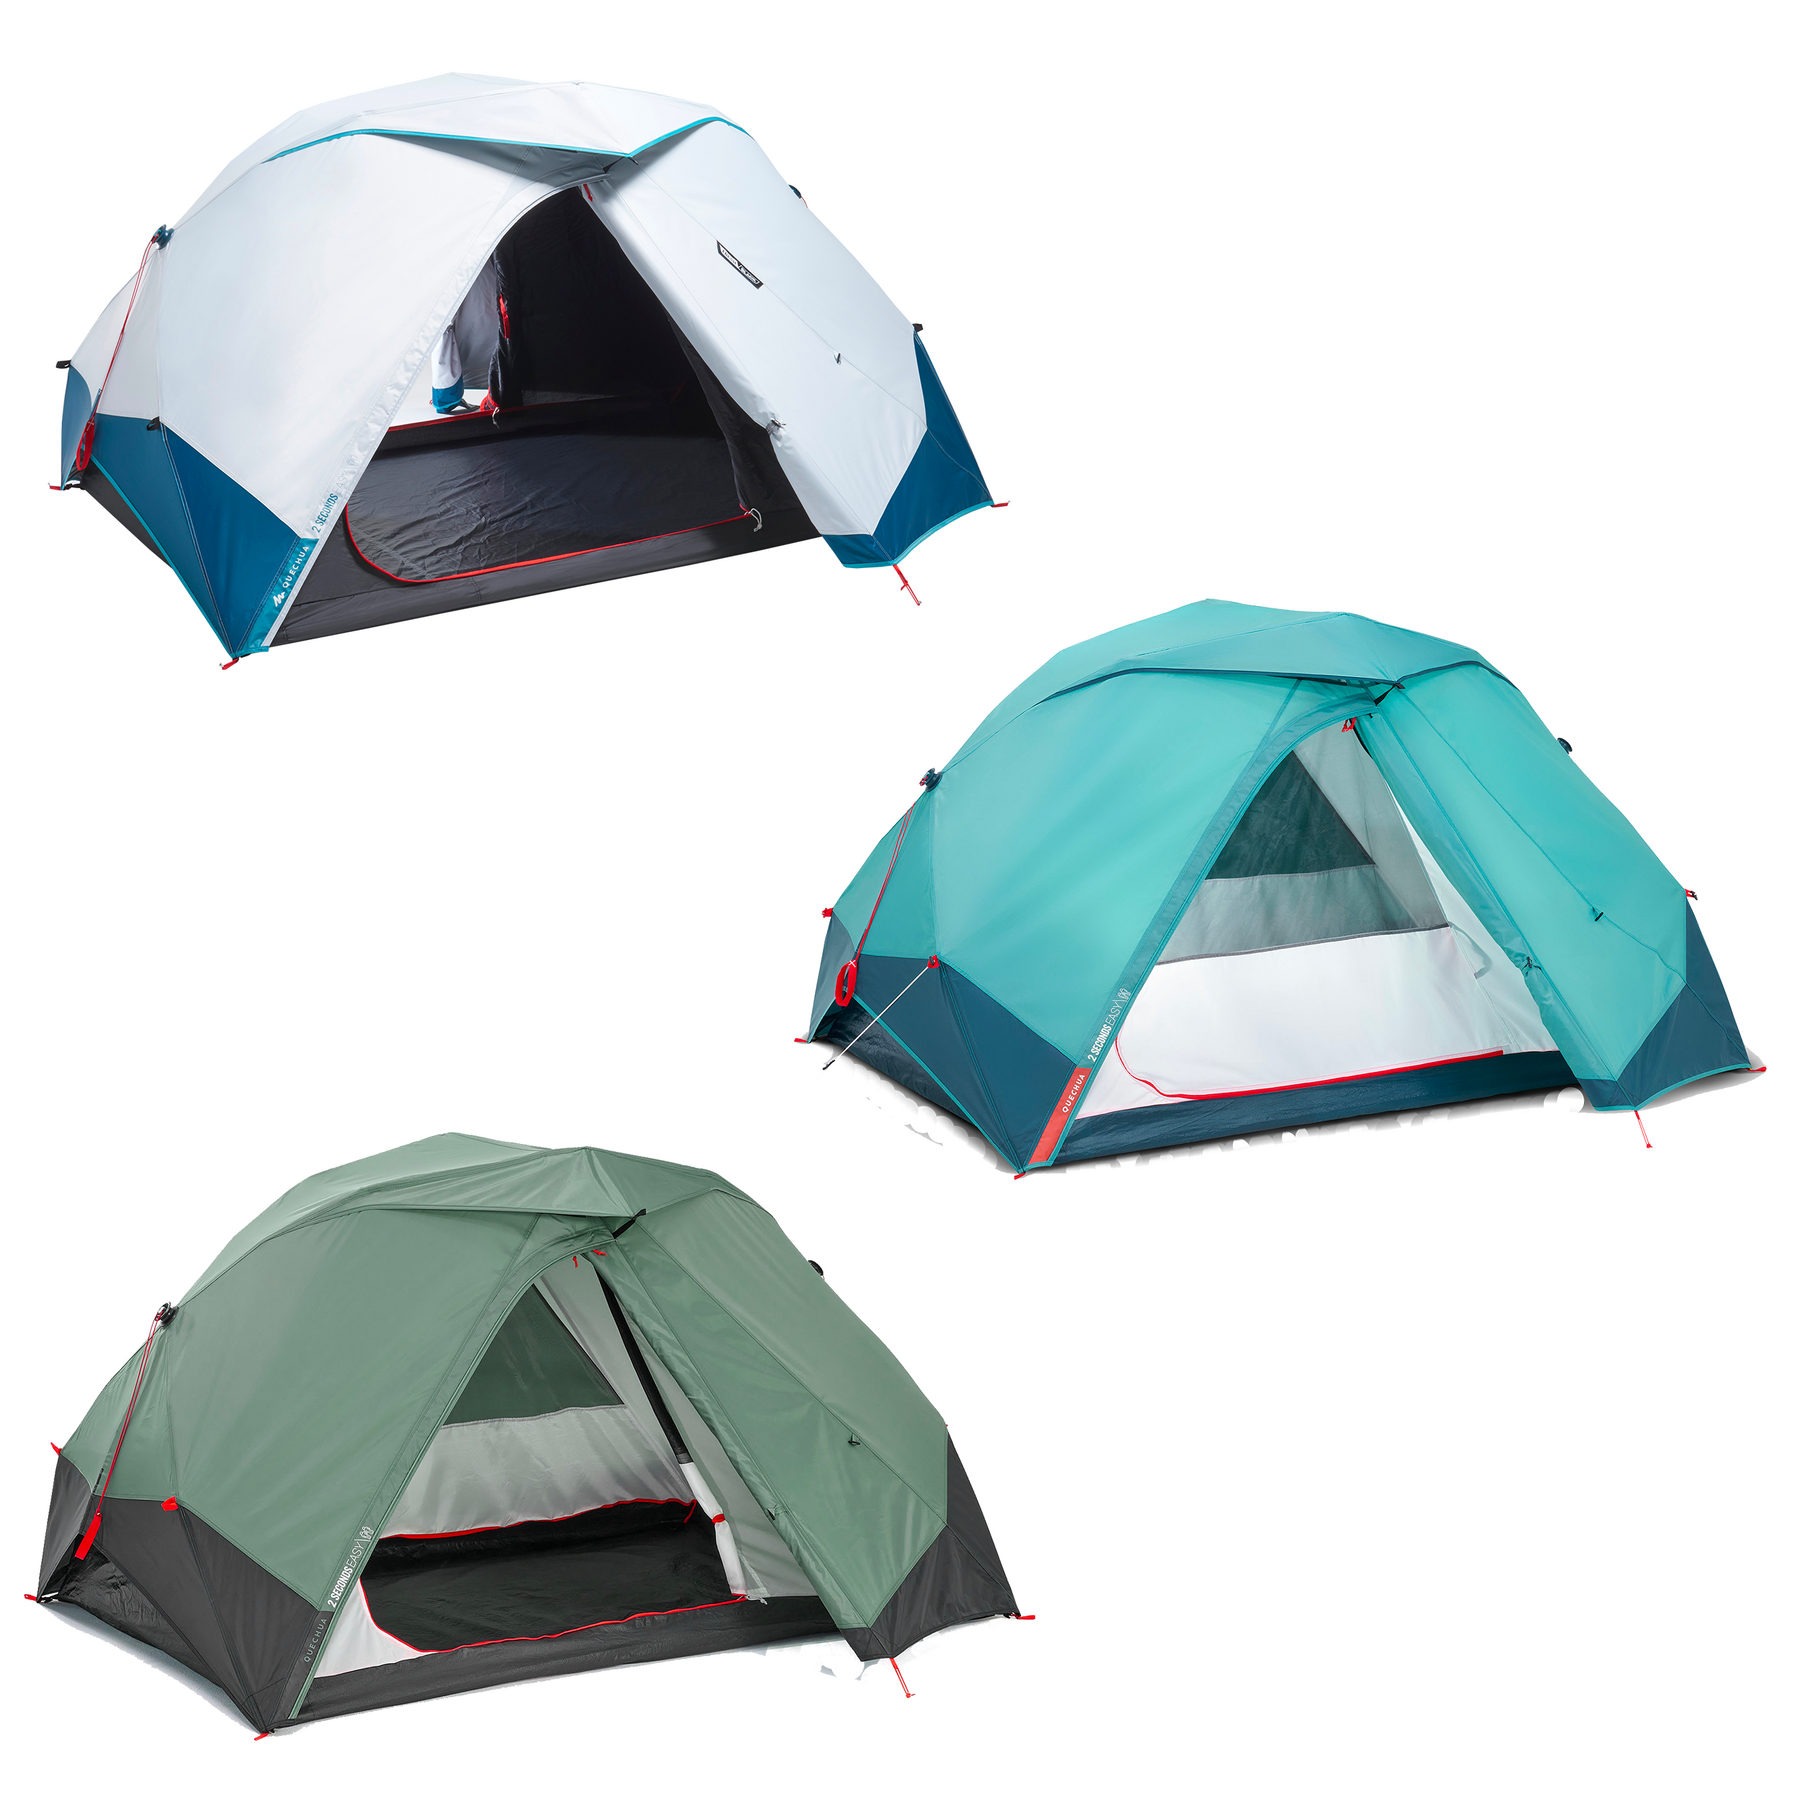 Nos conseils pour camper sous la tente sans soucis